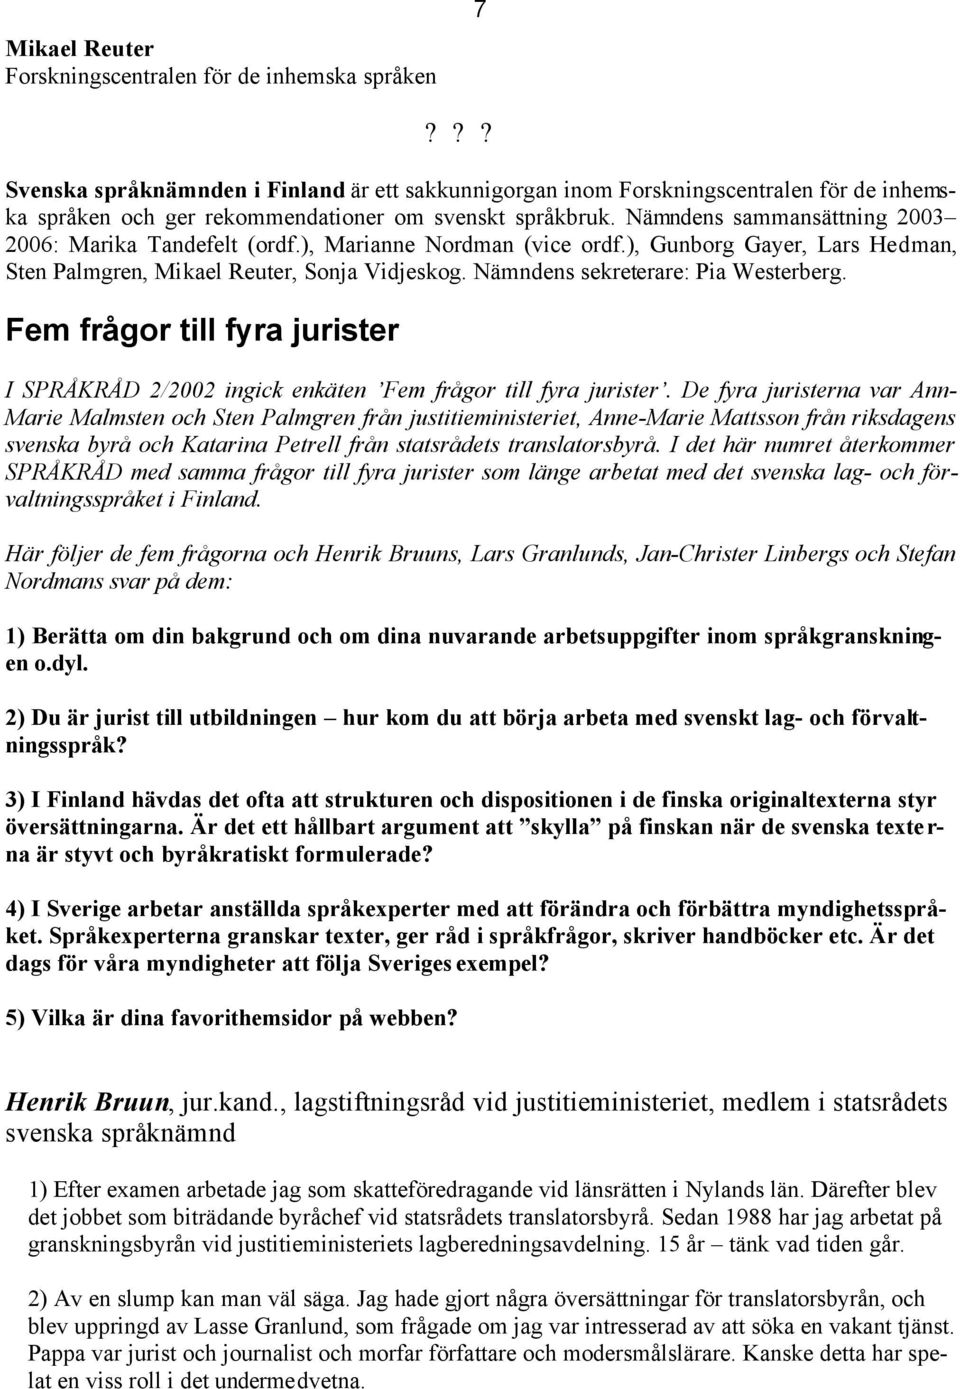 Nämndens sammansättning 2003 2006: Marika Tandefelt (ordf.), Marianne Nordman (vice ordf.), Gunborg Gayer, Lars Hedman, Sten Palmgren, Mikael Reuter, Sonja Vidjeskog.